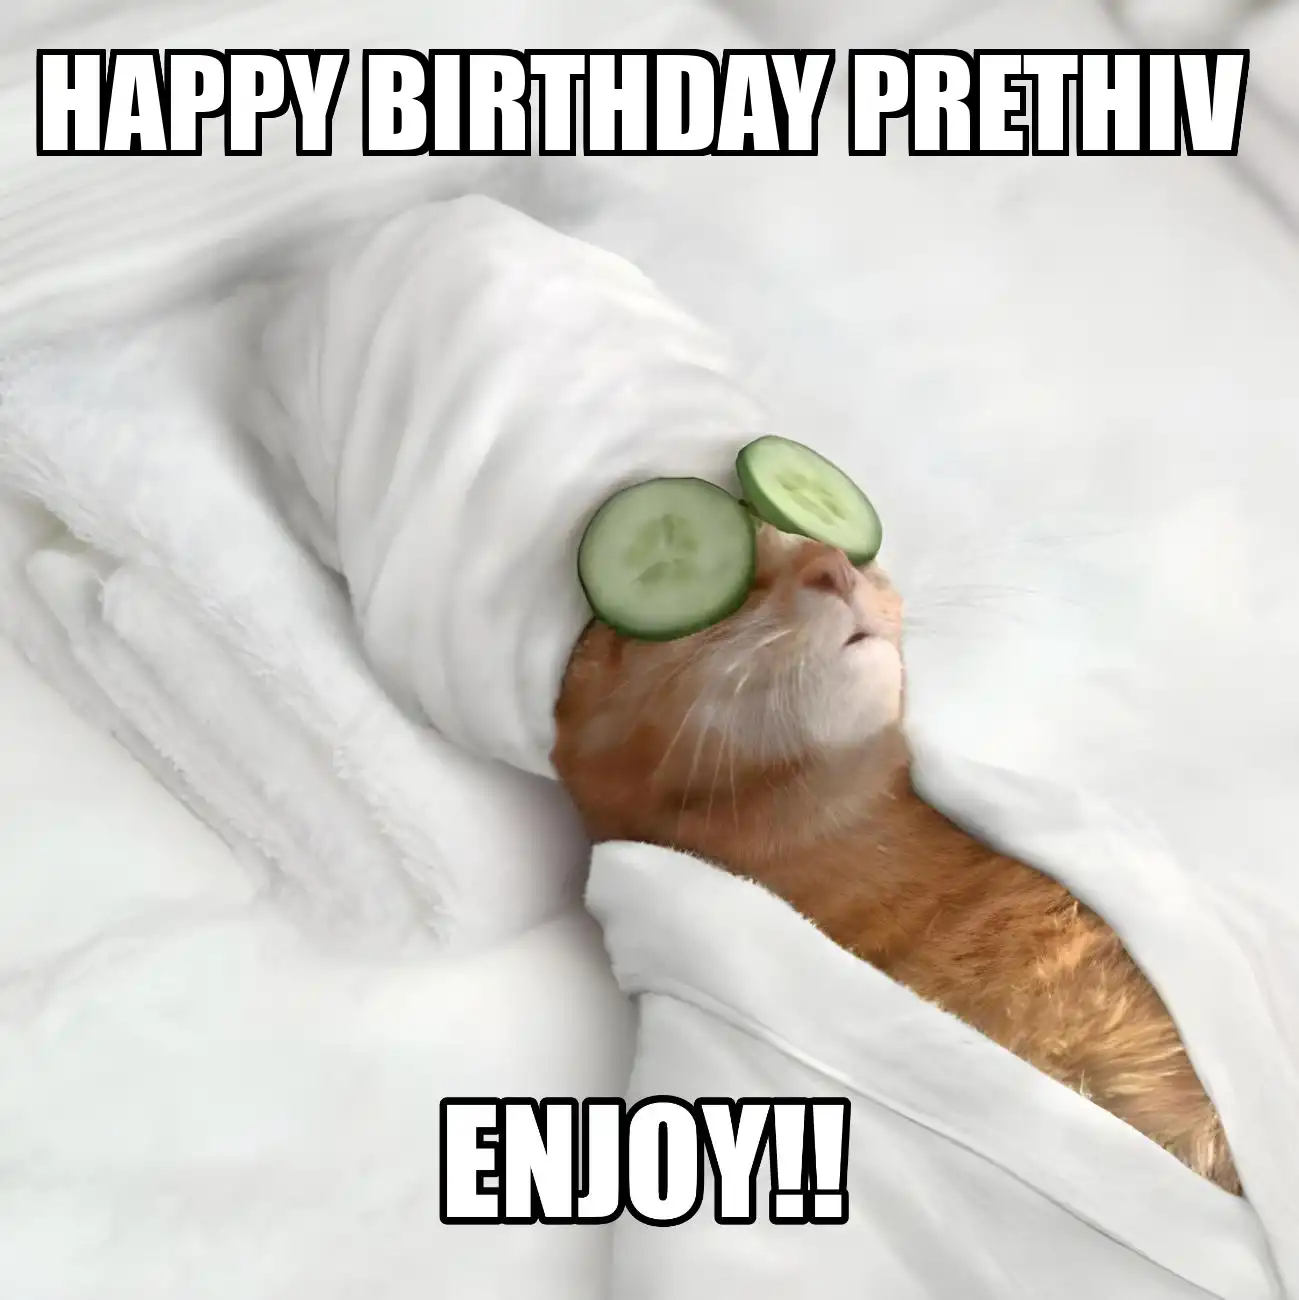 Happy Birthday Prethiv Enjoy Cat Meme